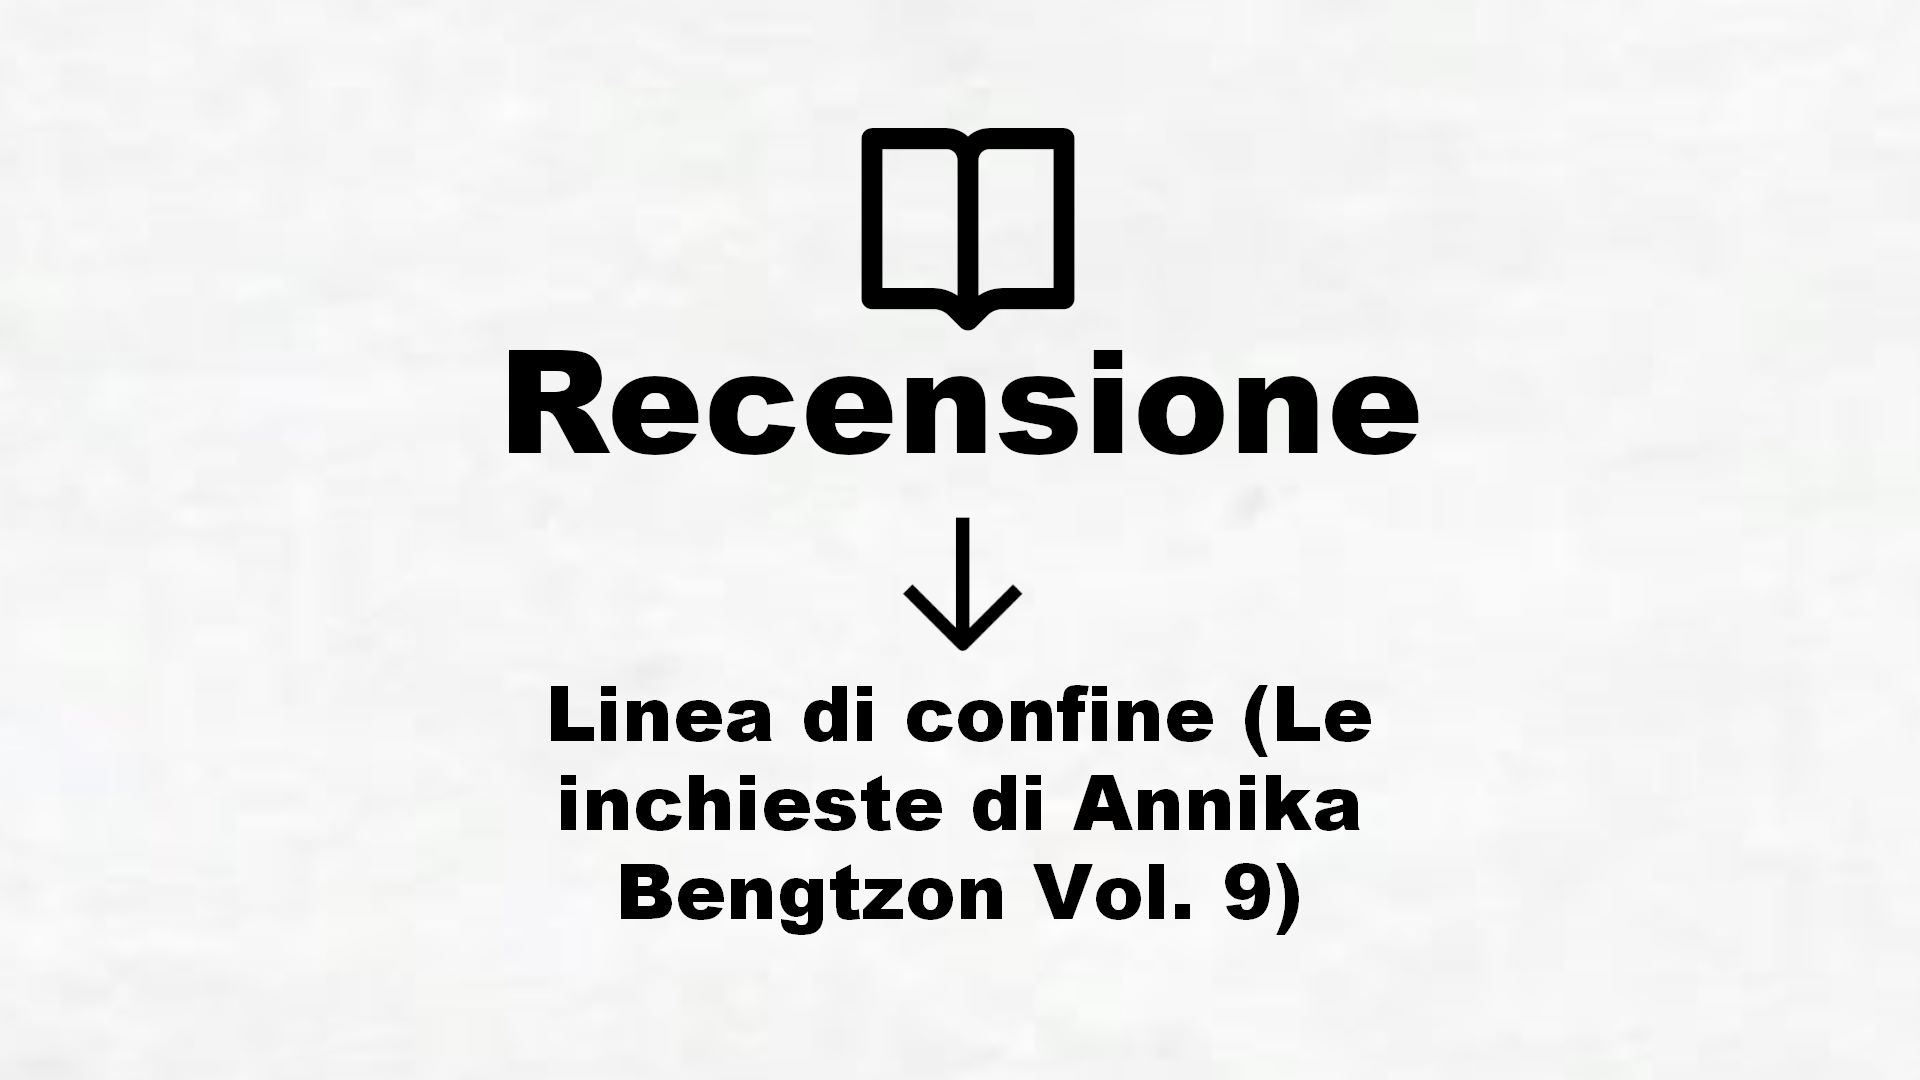 Linea di confine (Le inchieste di Annika Bengtzon Vol. 9) – Recensione Libro